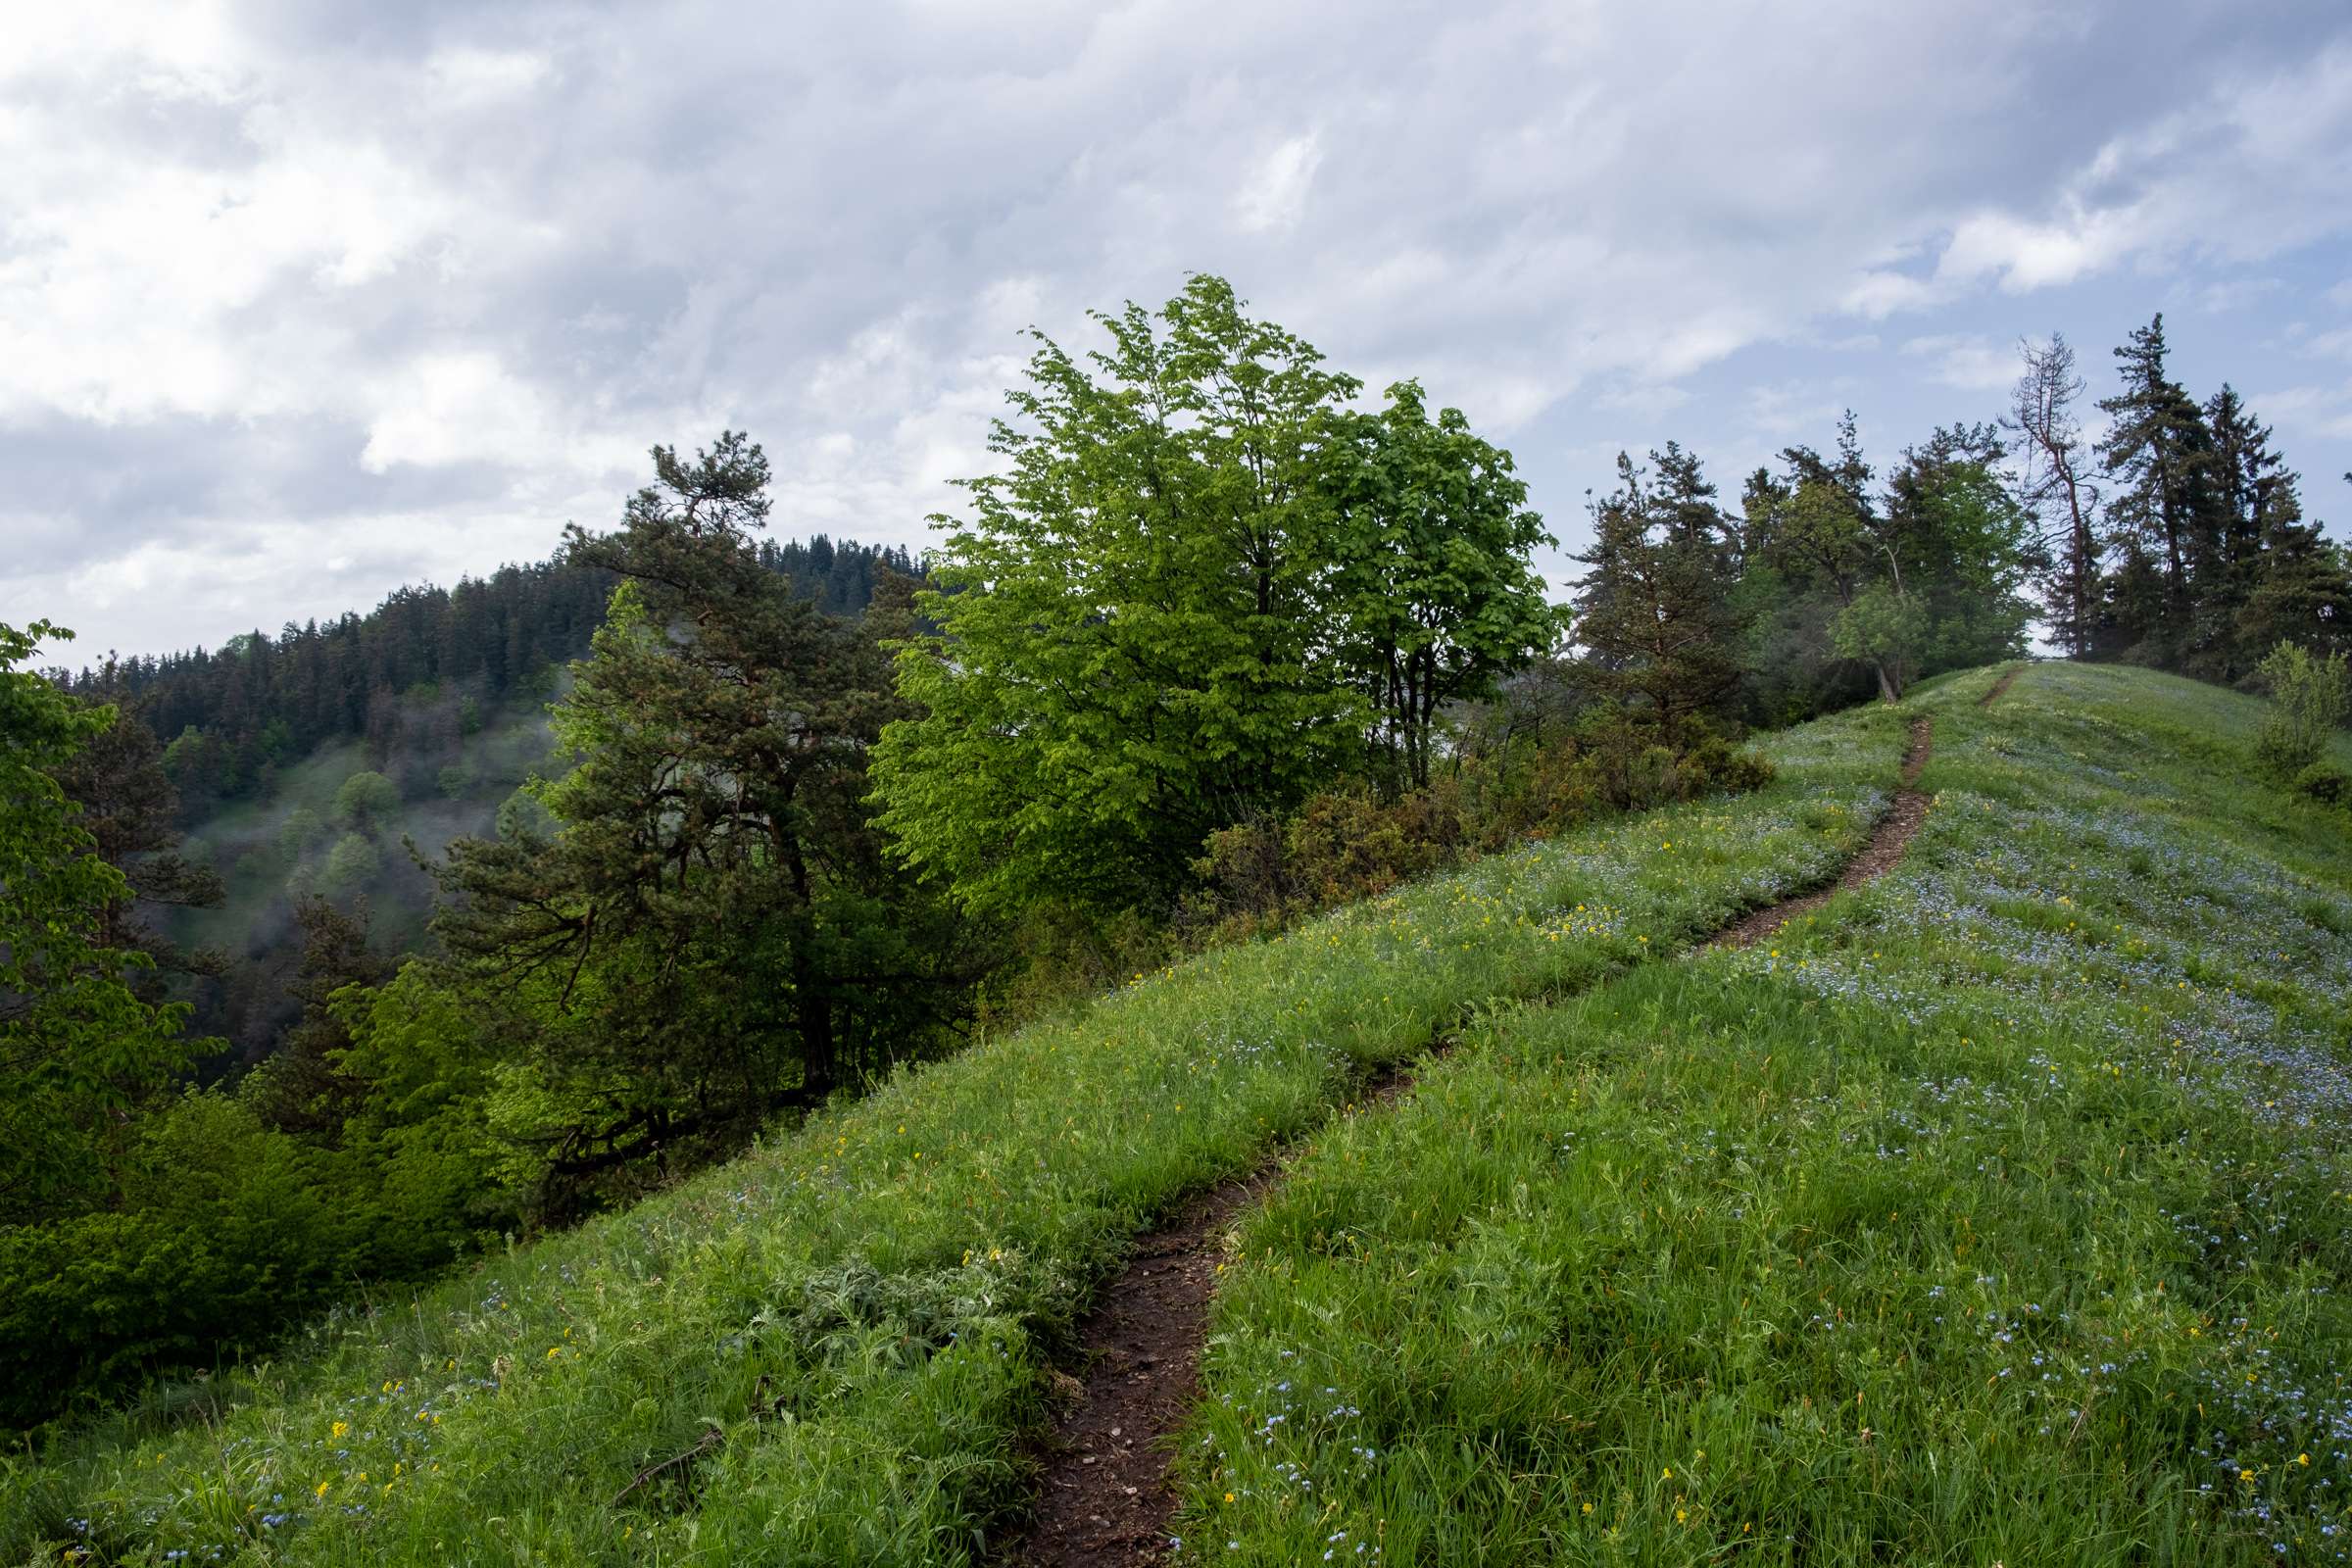 Footprint trail, Borjomi National Park, Samtskhe-Javakheti